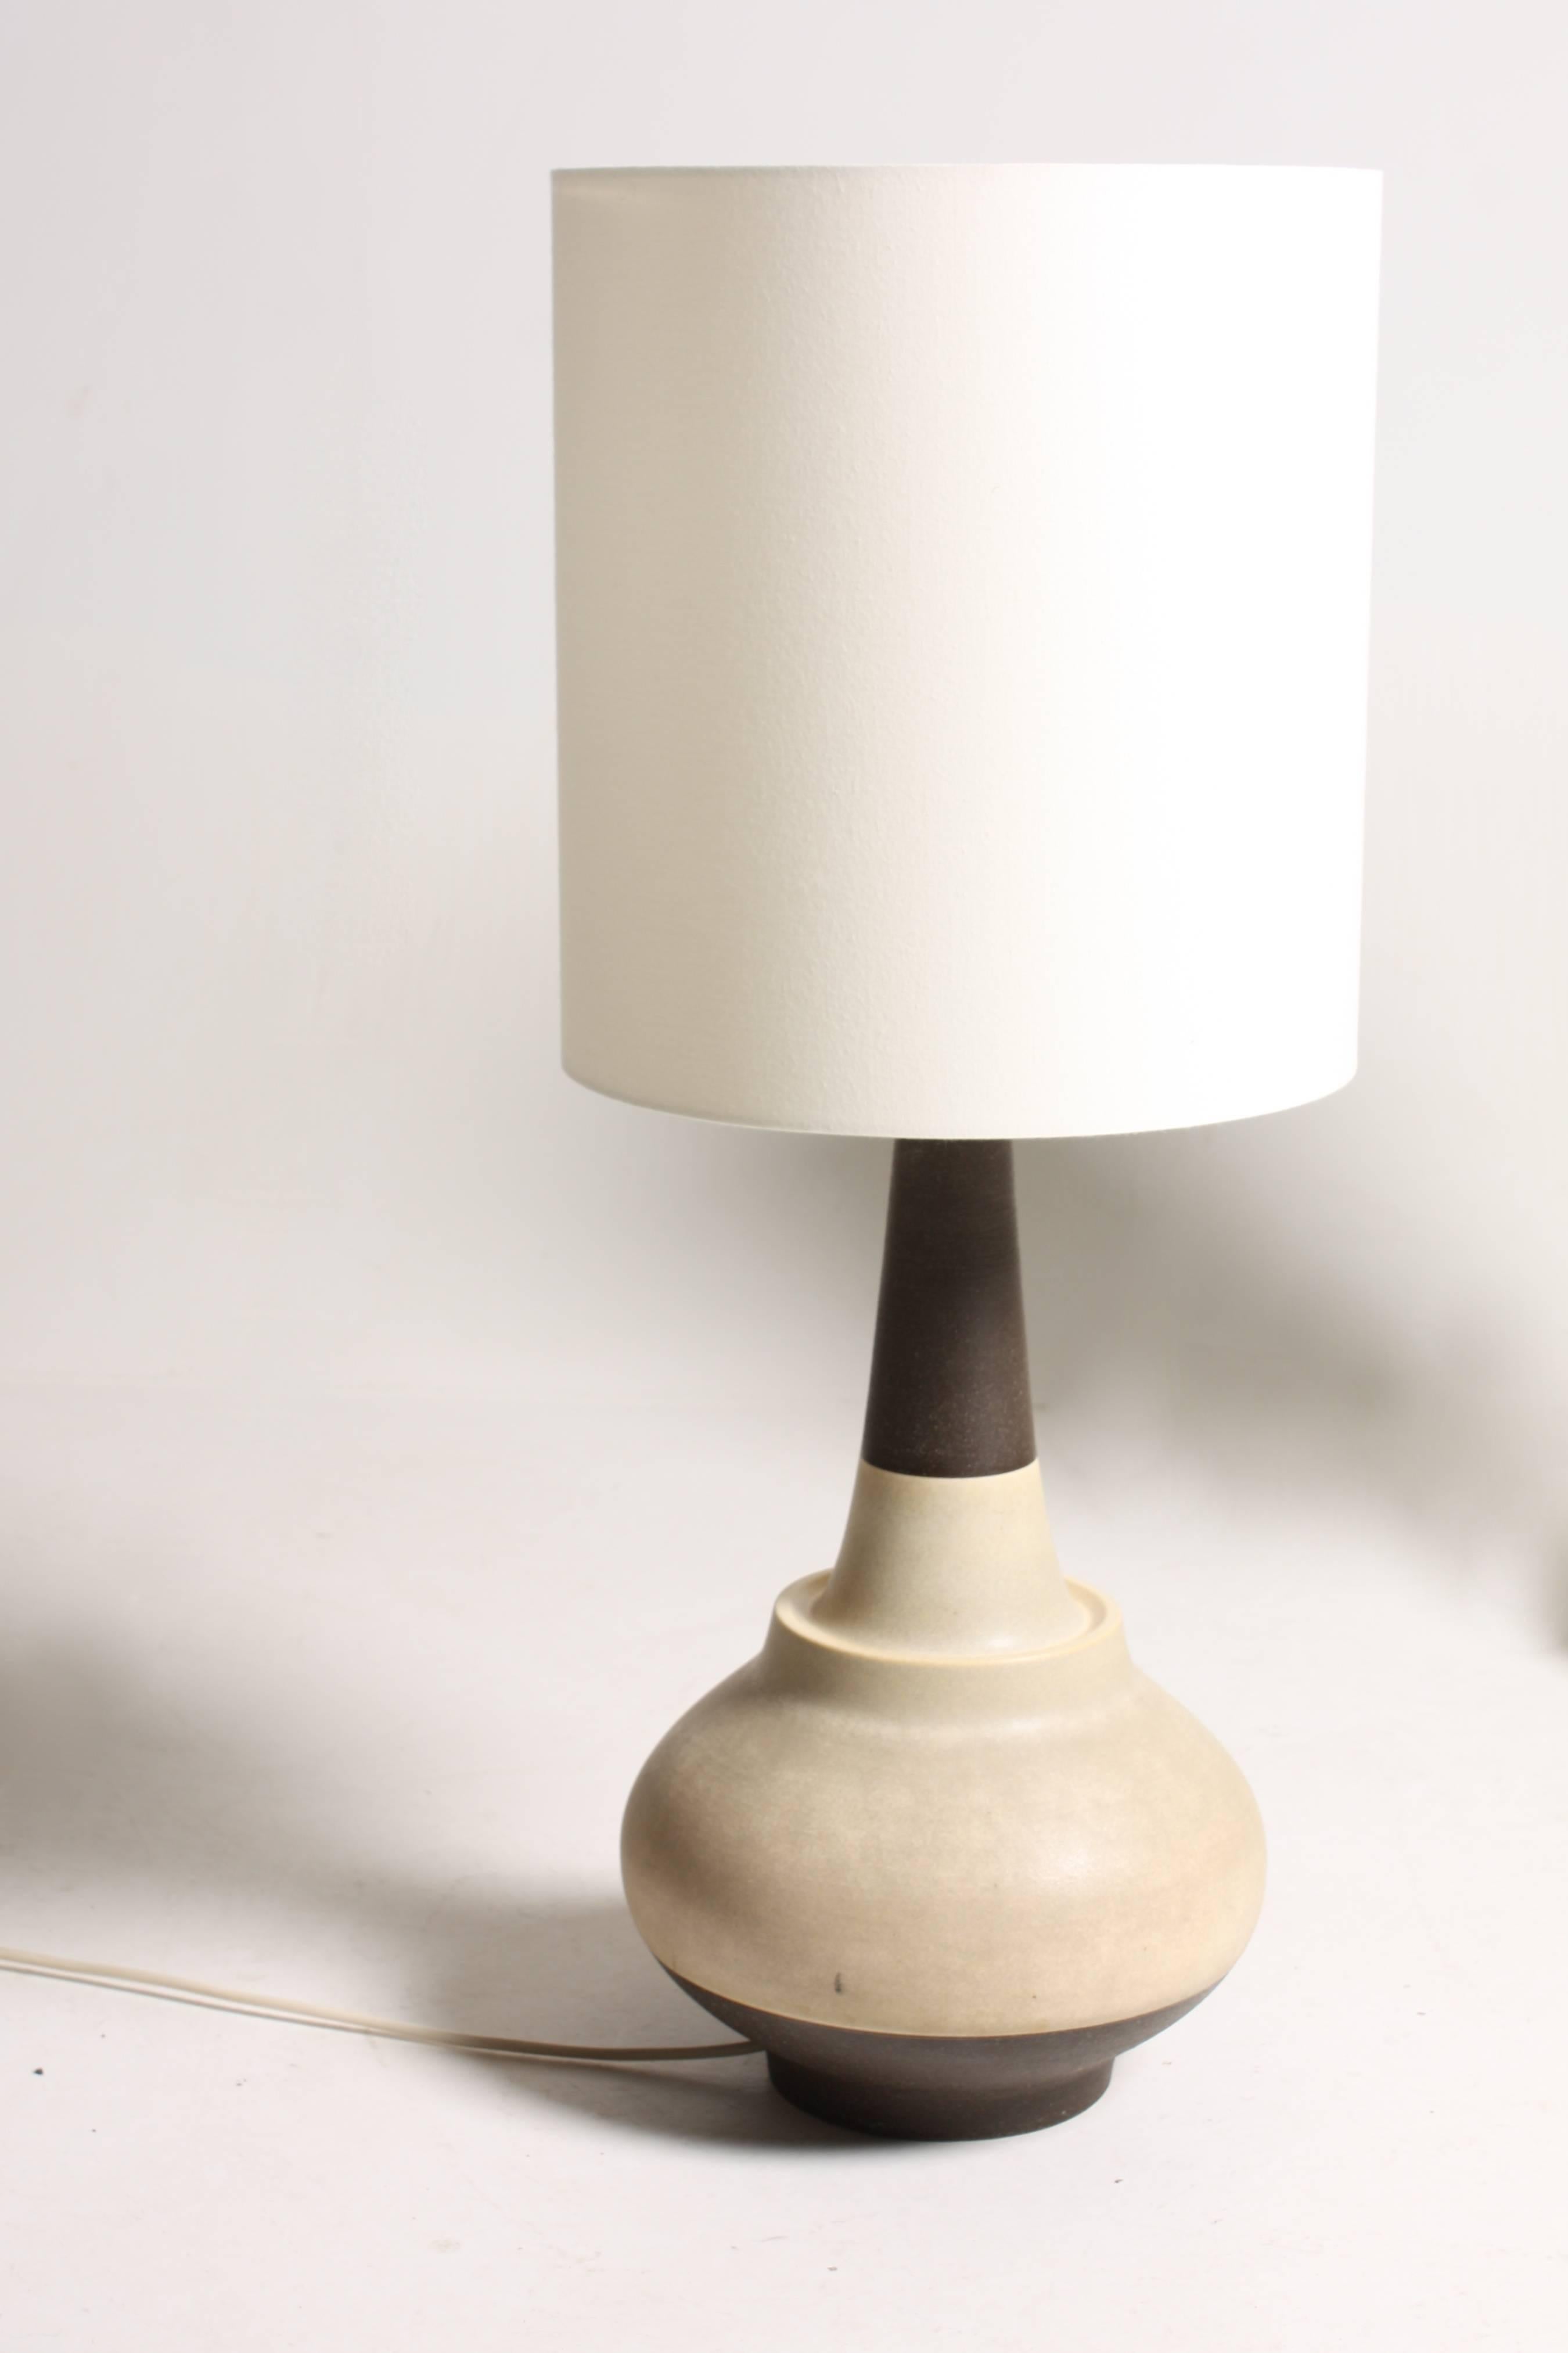 Danish Set of Six Hand-Thrown Ceramic Table Lamps